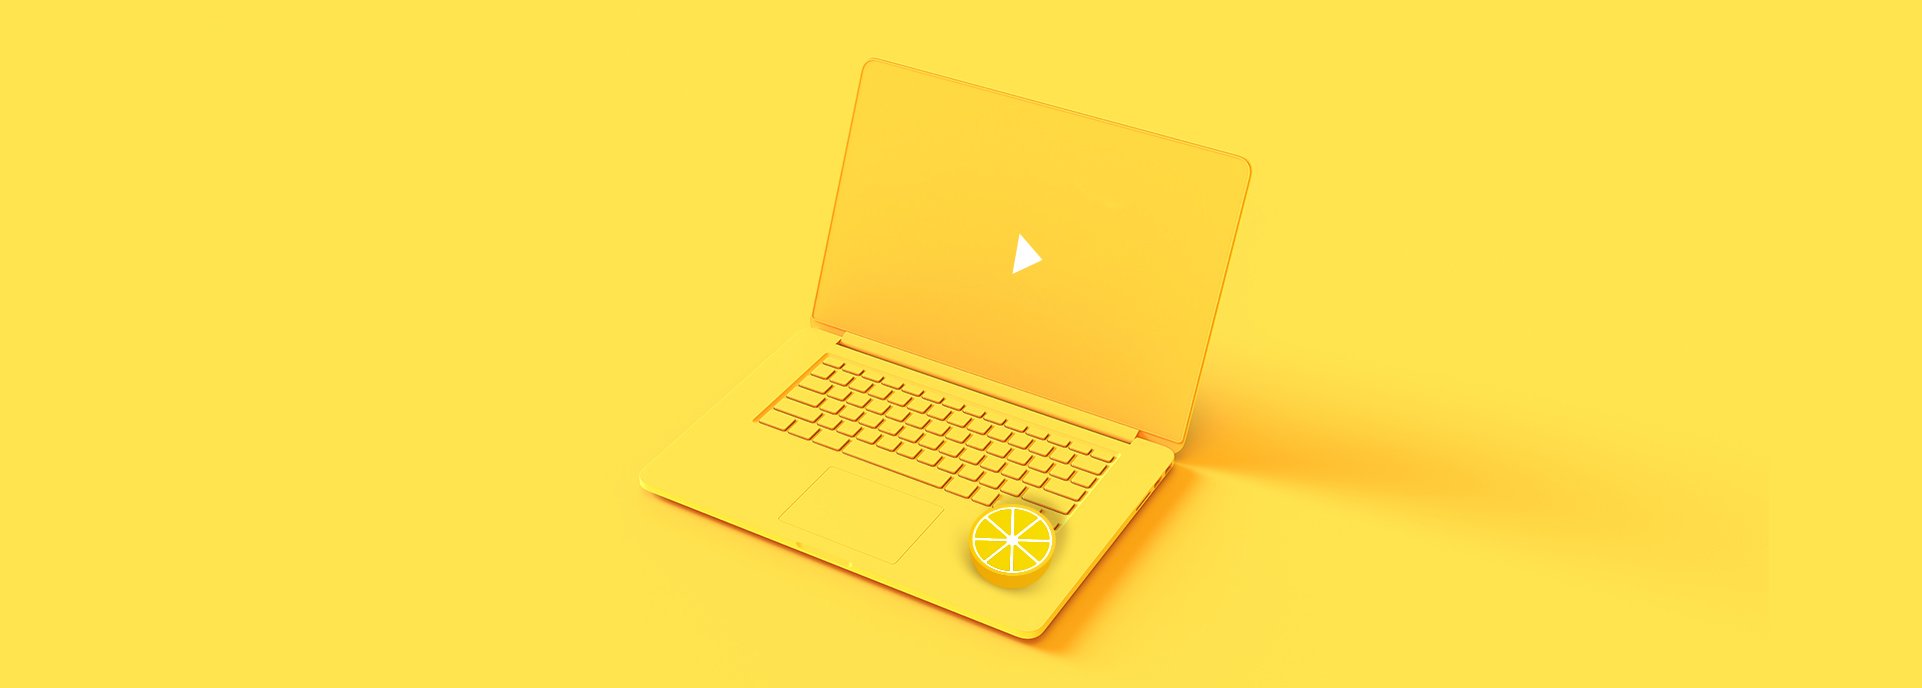 When 2020 handed us lemons, we made webinars